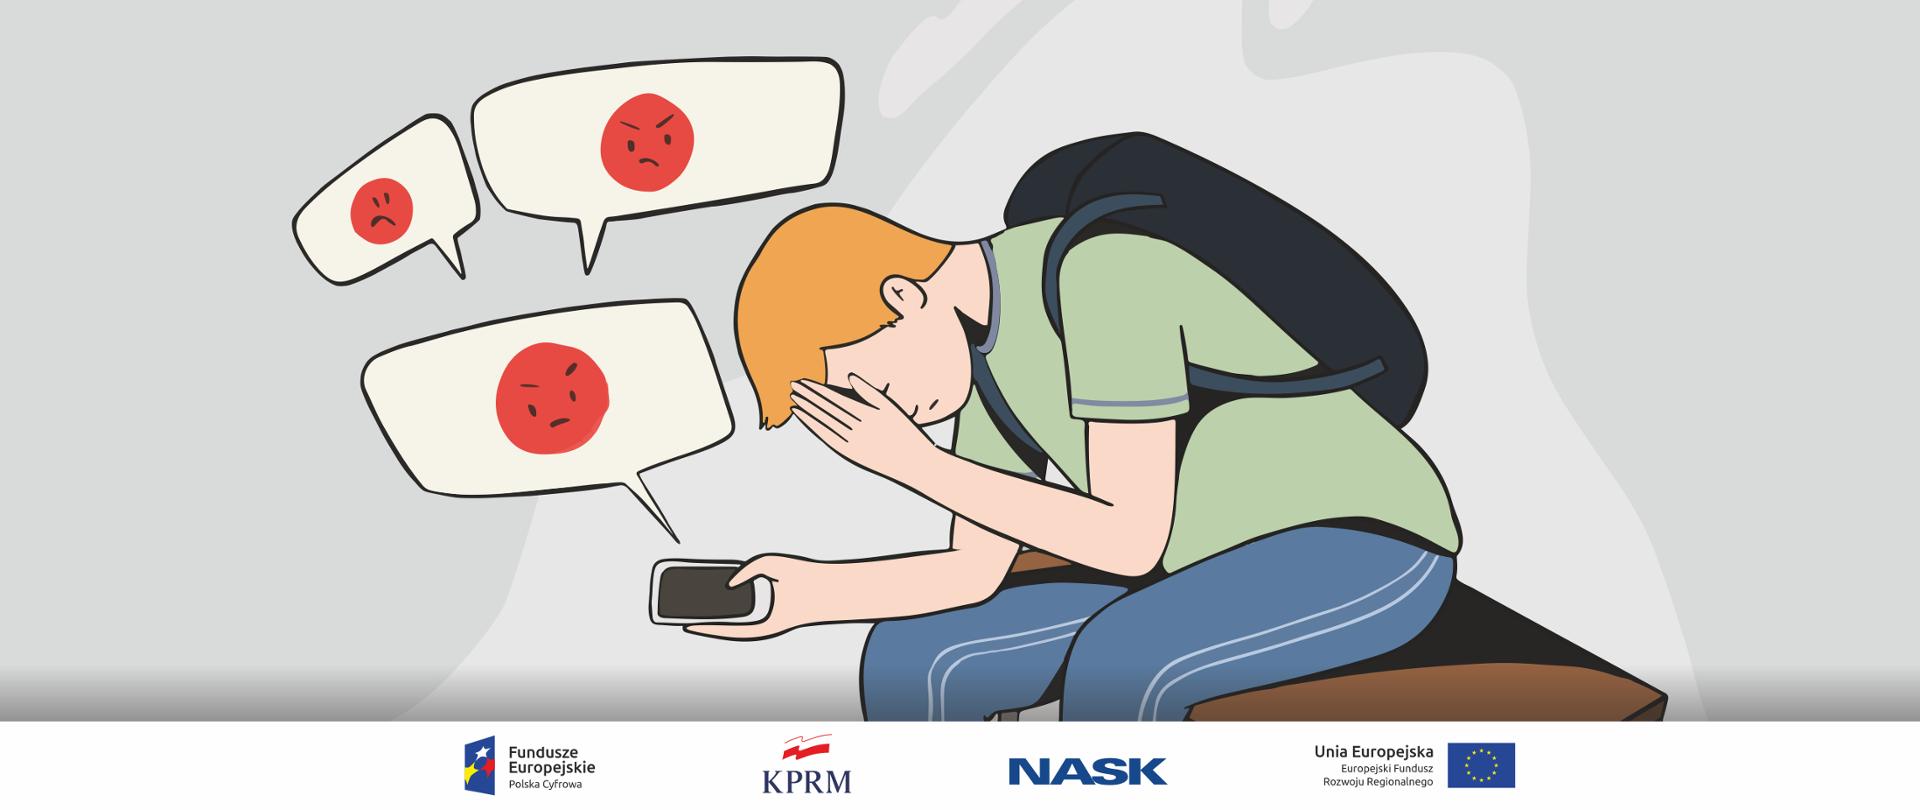 Kolorowa grafika wektorowa - młody chłopak z plecakiem siedzi smutny na ławce, jedną ręką łapie się za głowę, w drugiej - trzyma telefon komórkowy. Wokół telefony chmurki symbolizujące nadchodzące wiadomości, w nich czerwone groźne emotikony.